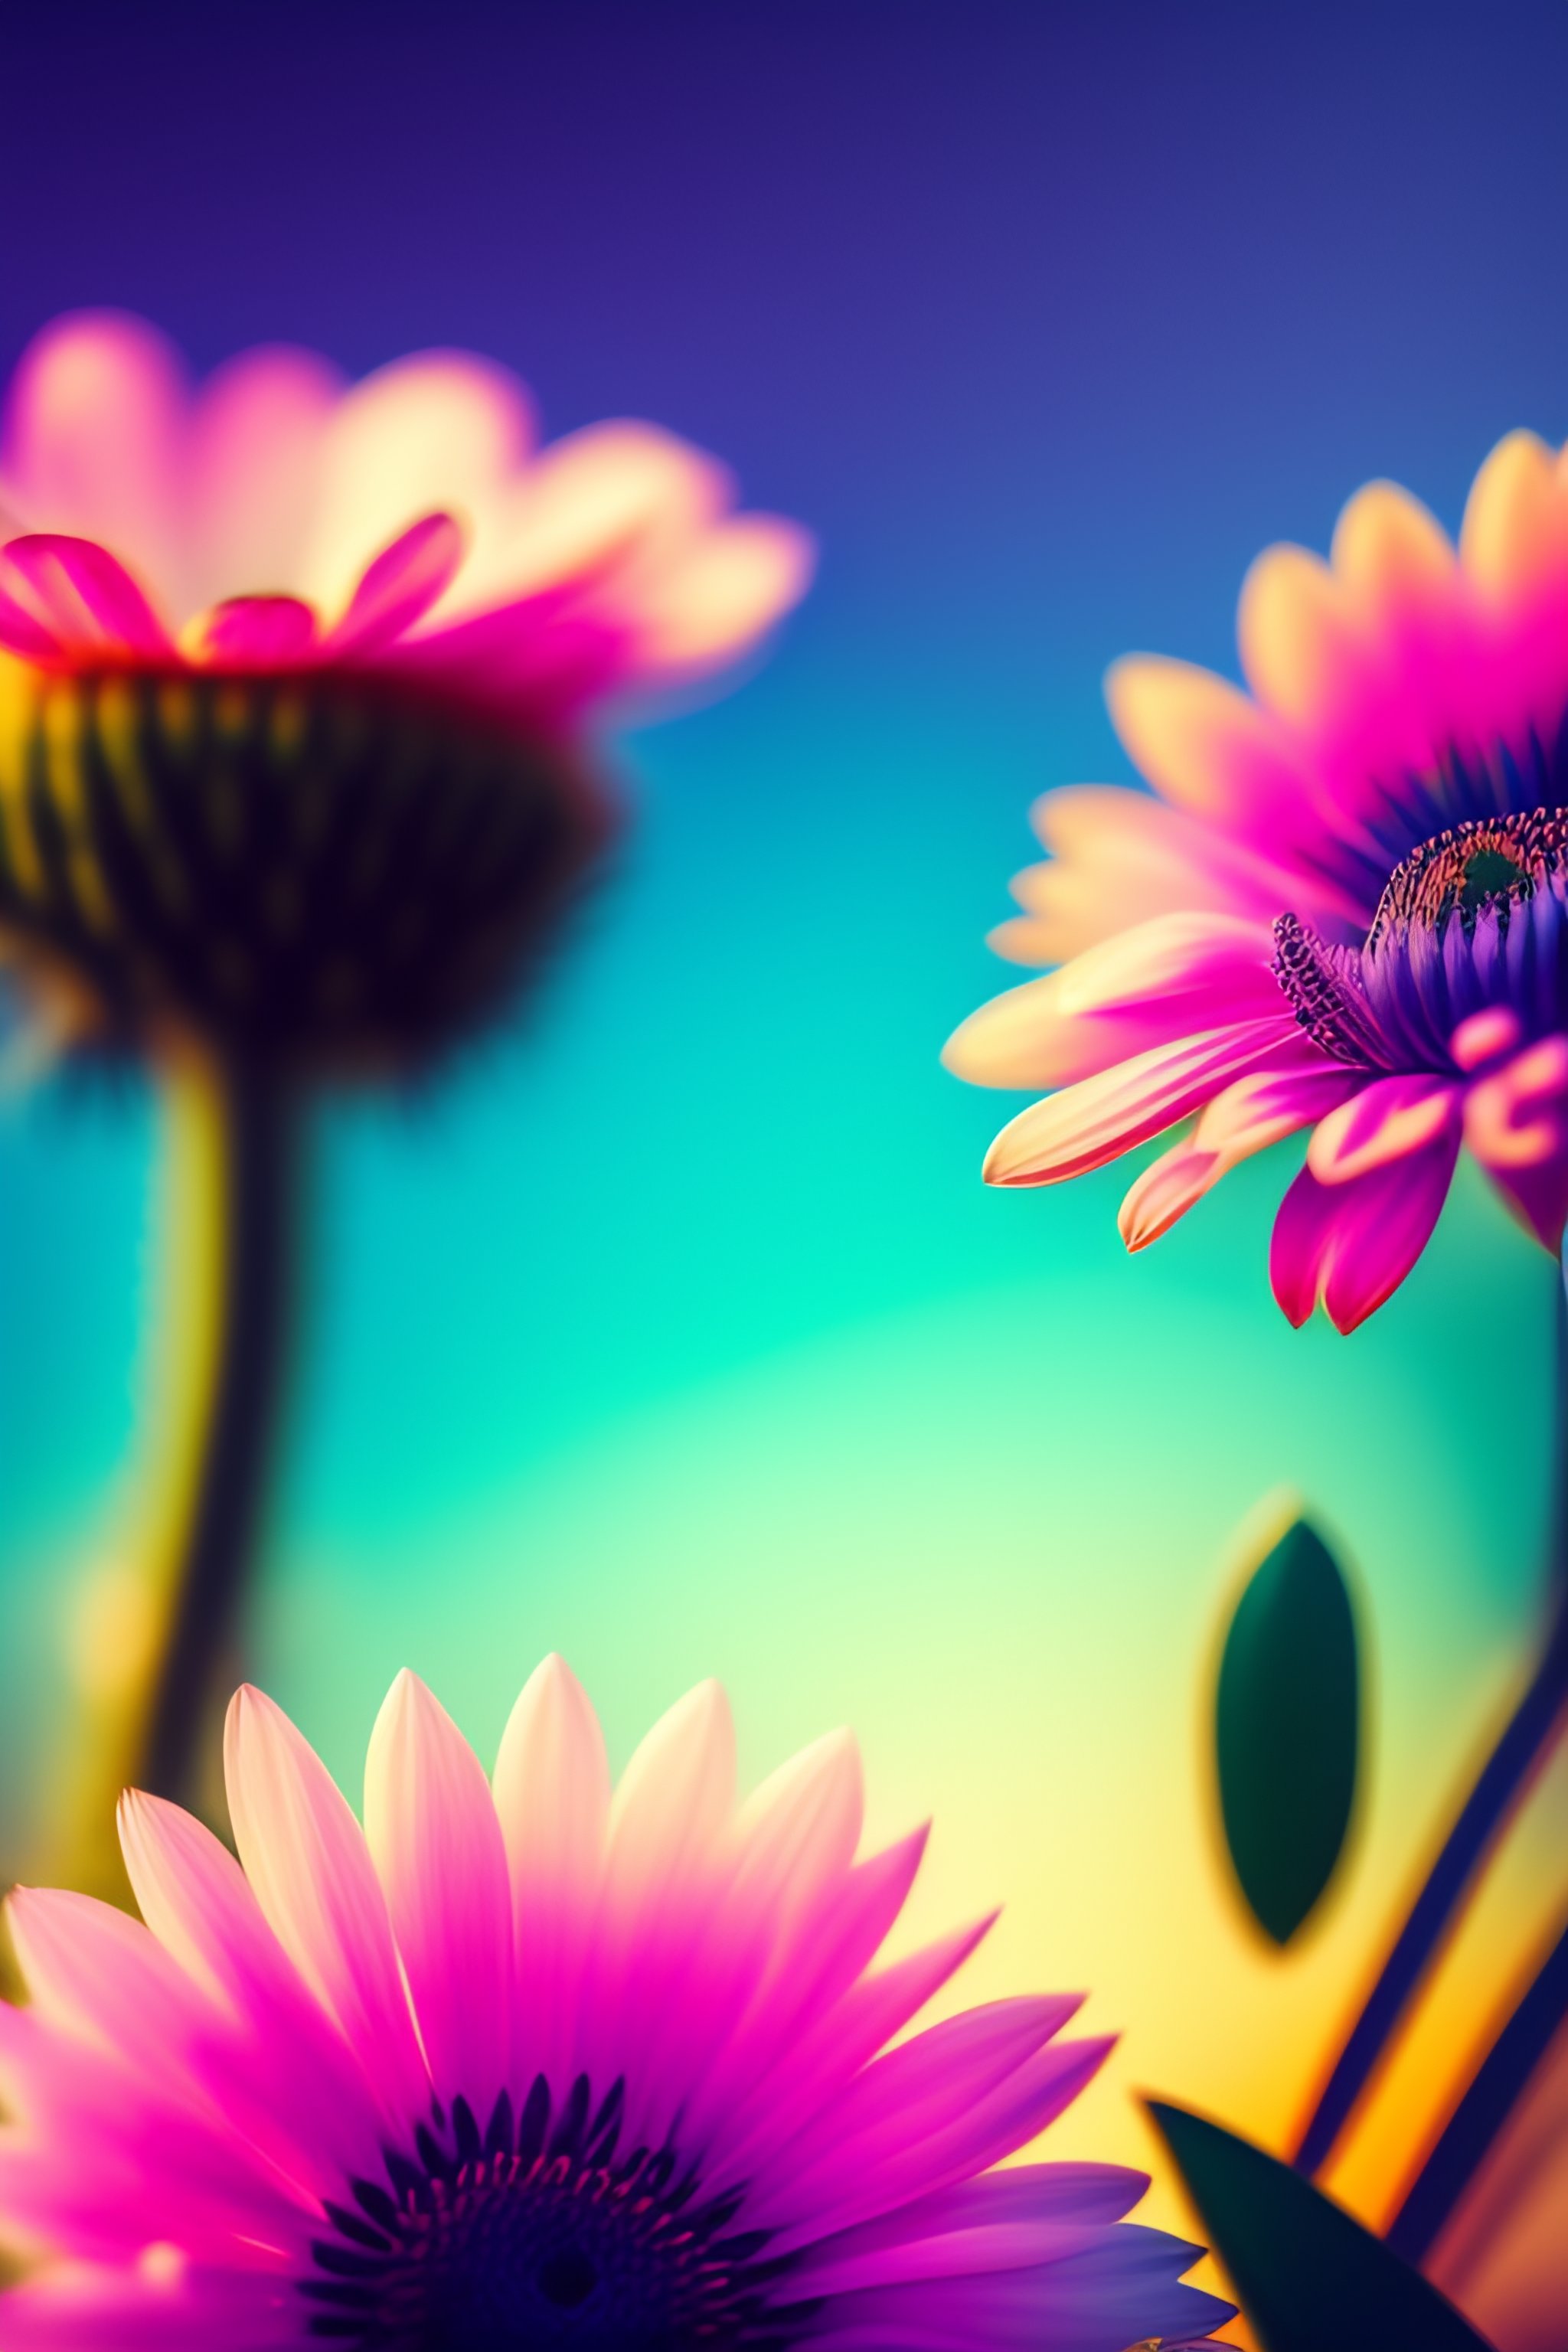 Lexica - Background image, plant theme, pastel colors, low saturation ...